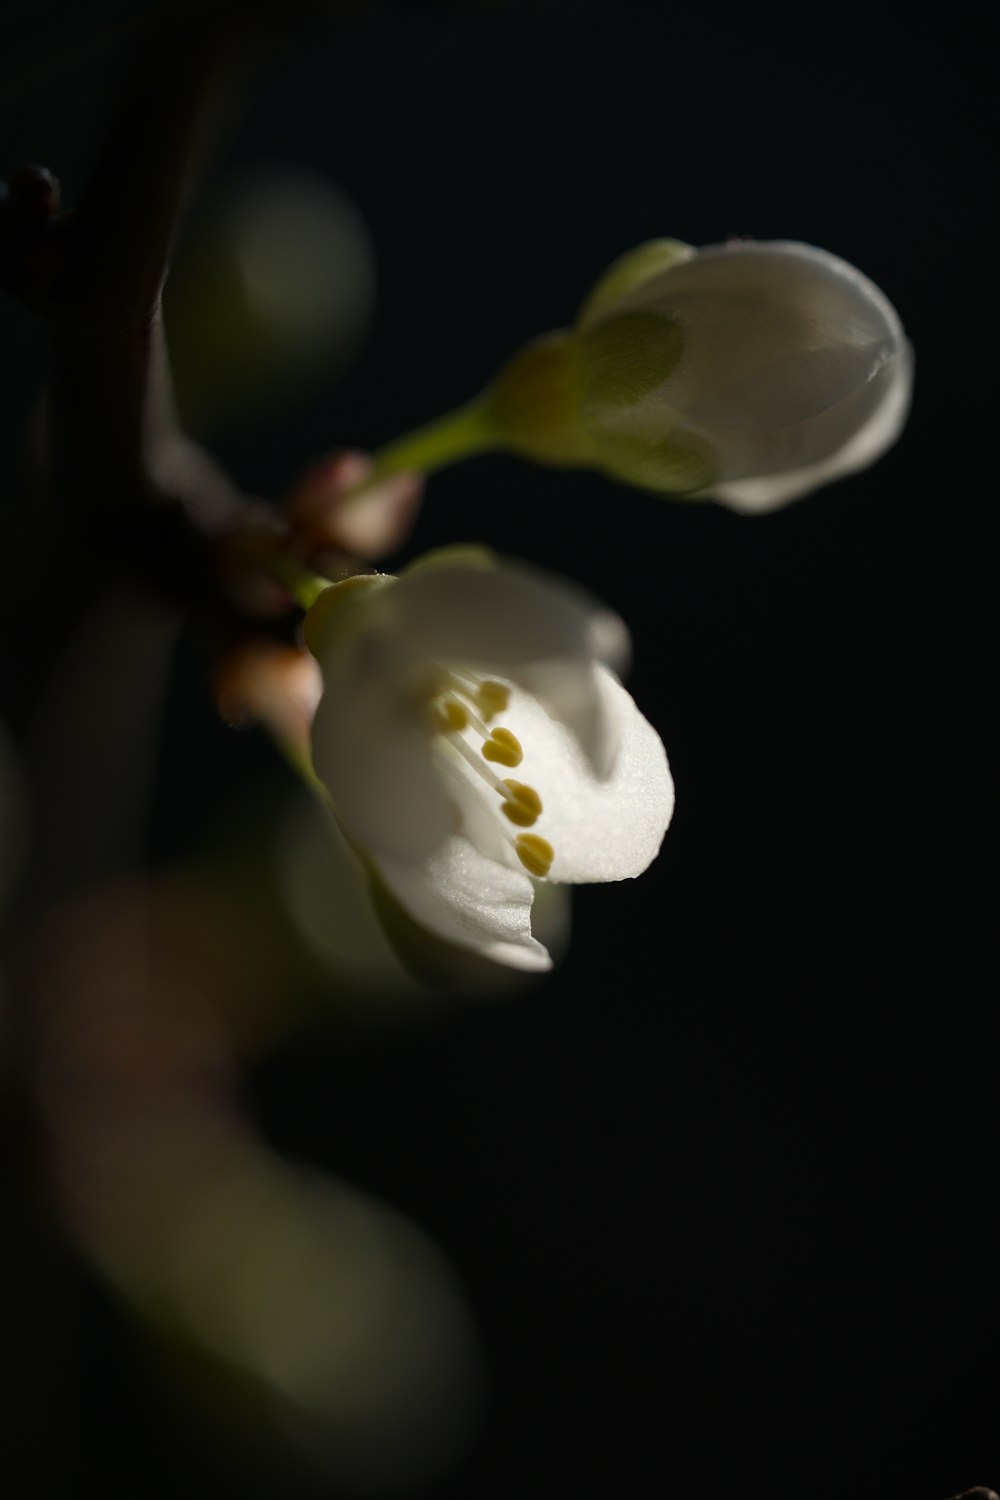 um close up de uma flor em uma árvore